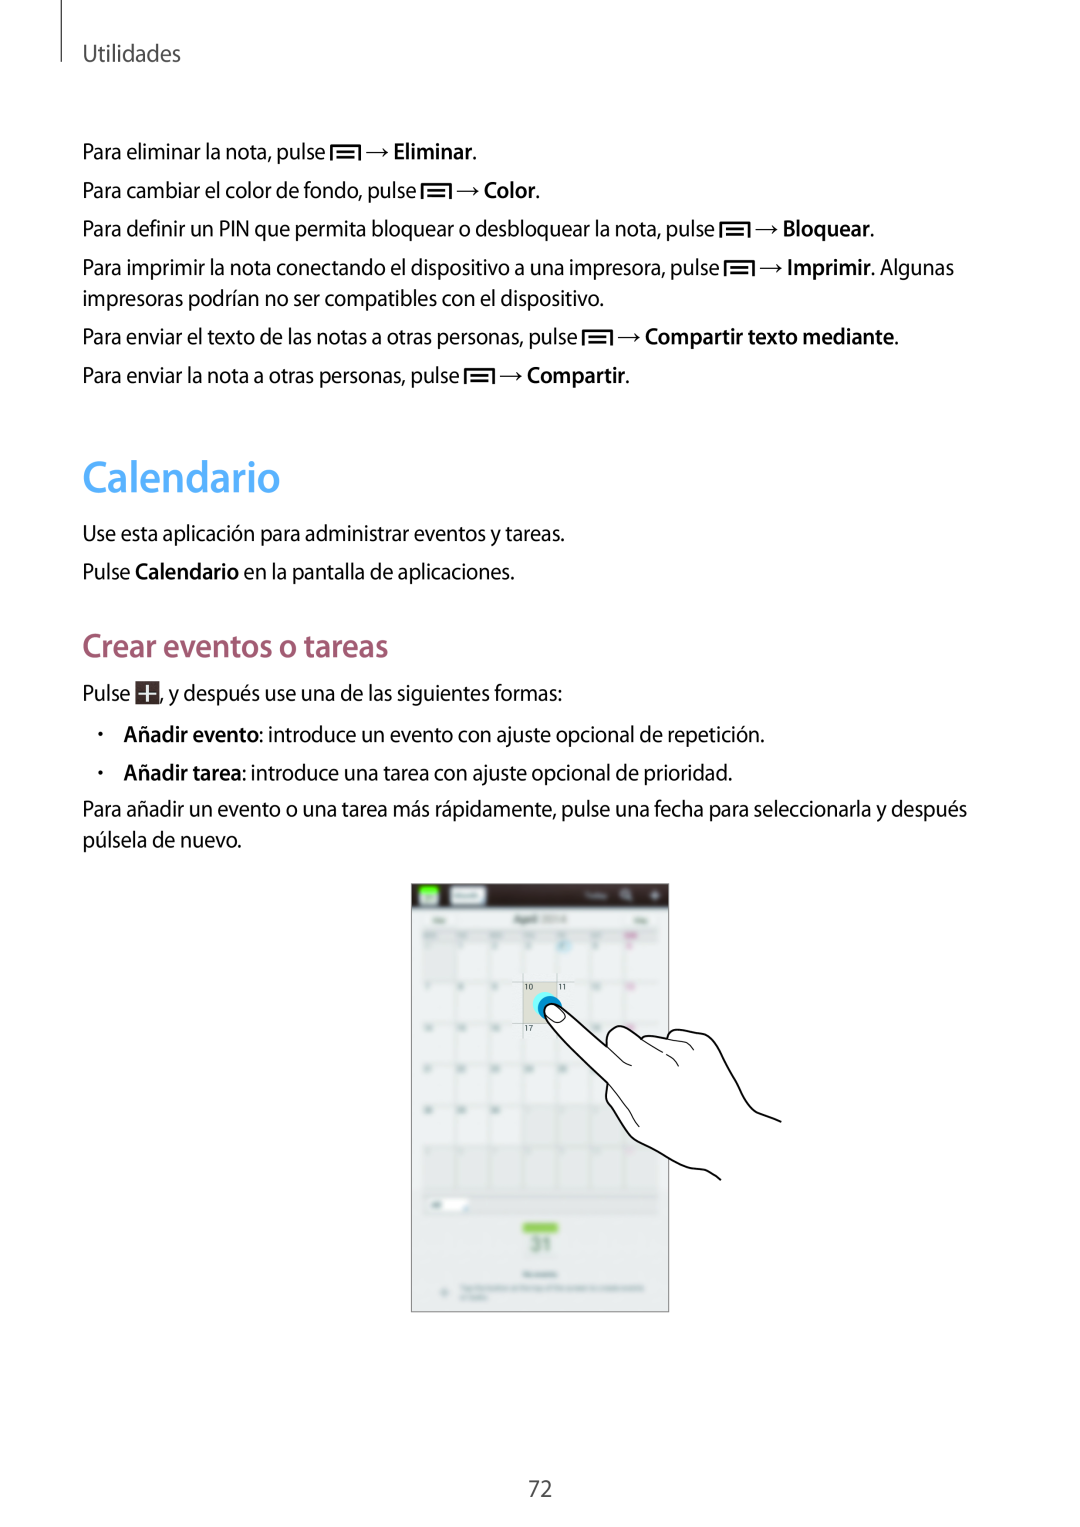 Samsung SM-T2100ZWATPH manual Calendario, Crear eventos o tareas, Utilidades, →Eliminar, →Color, →Bloquear, →Compartir 